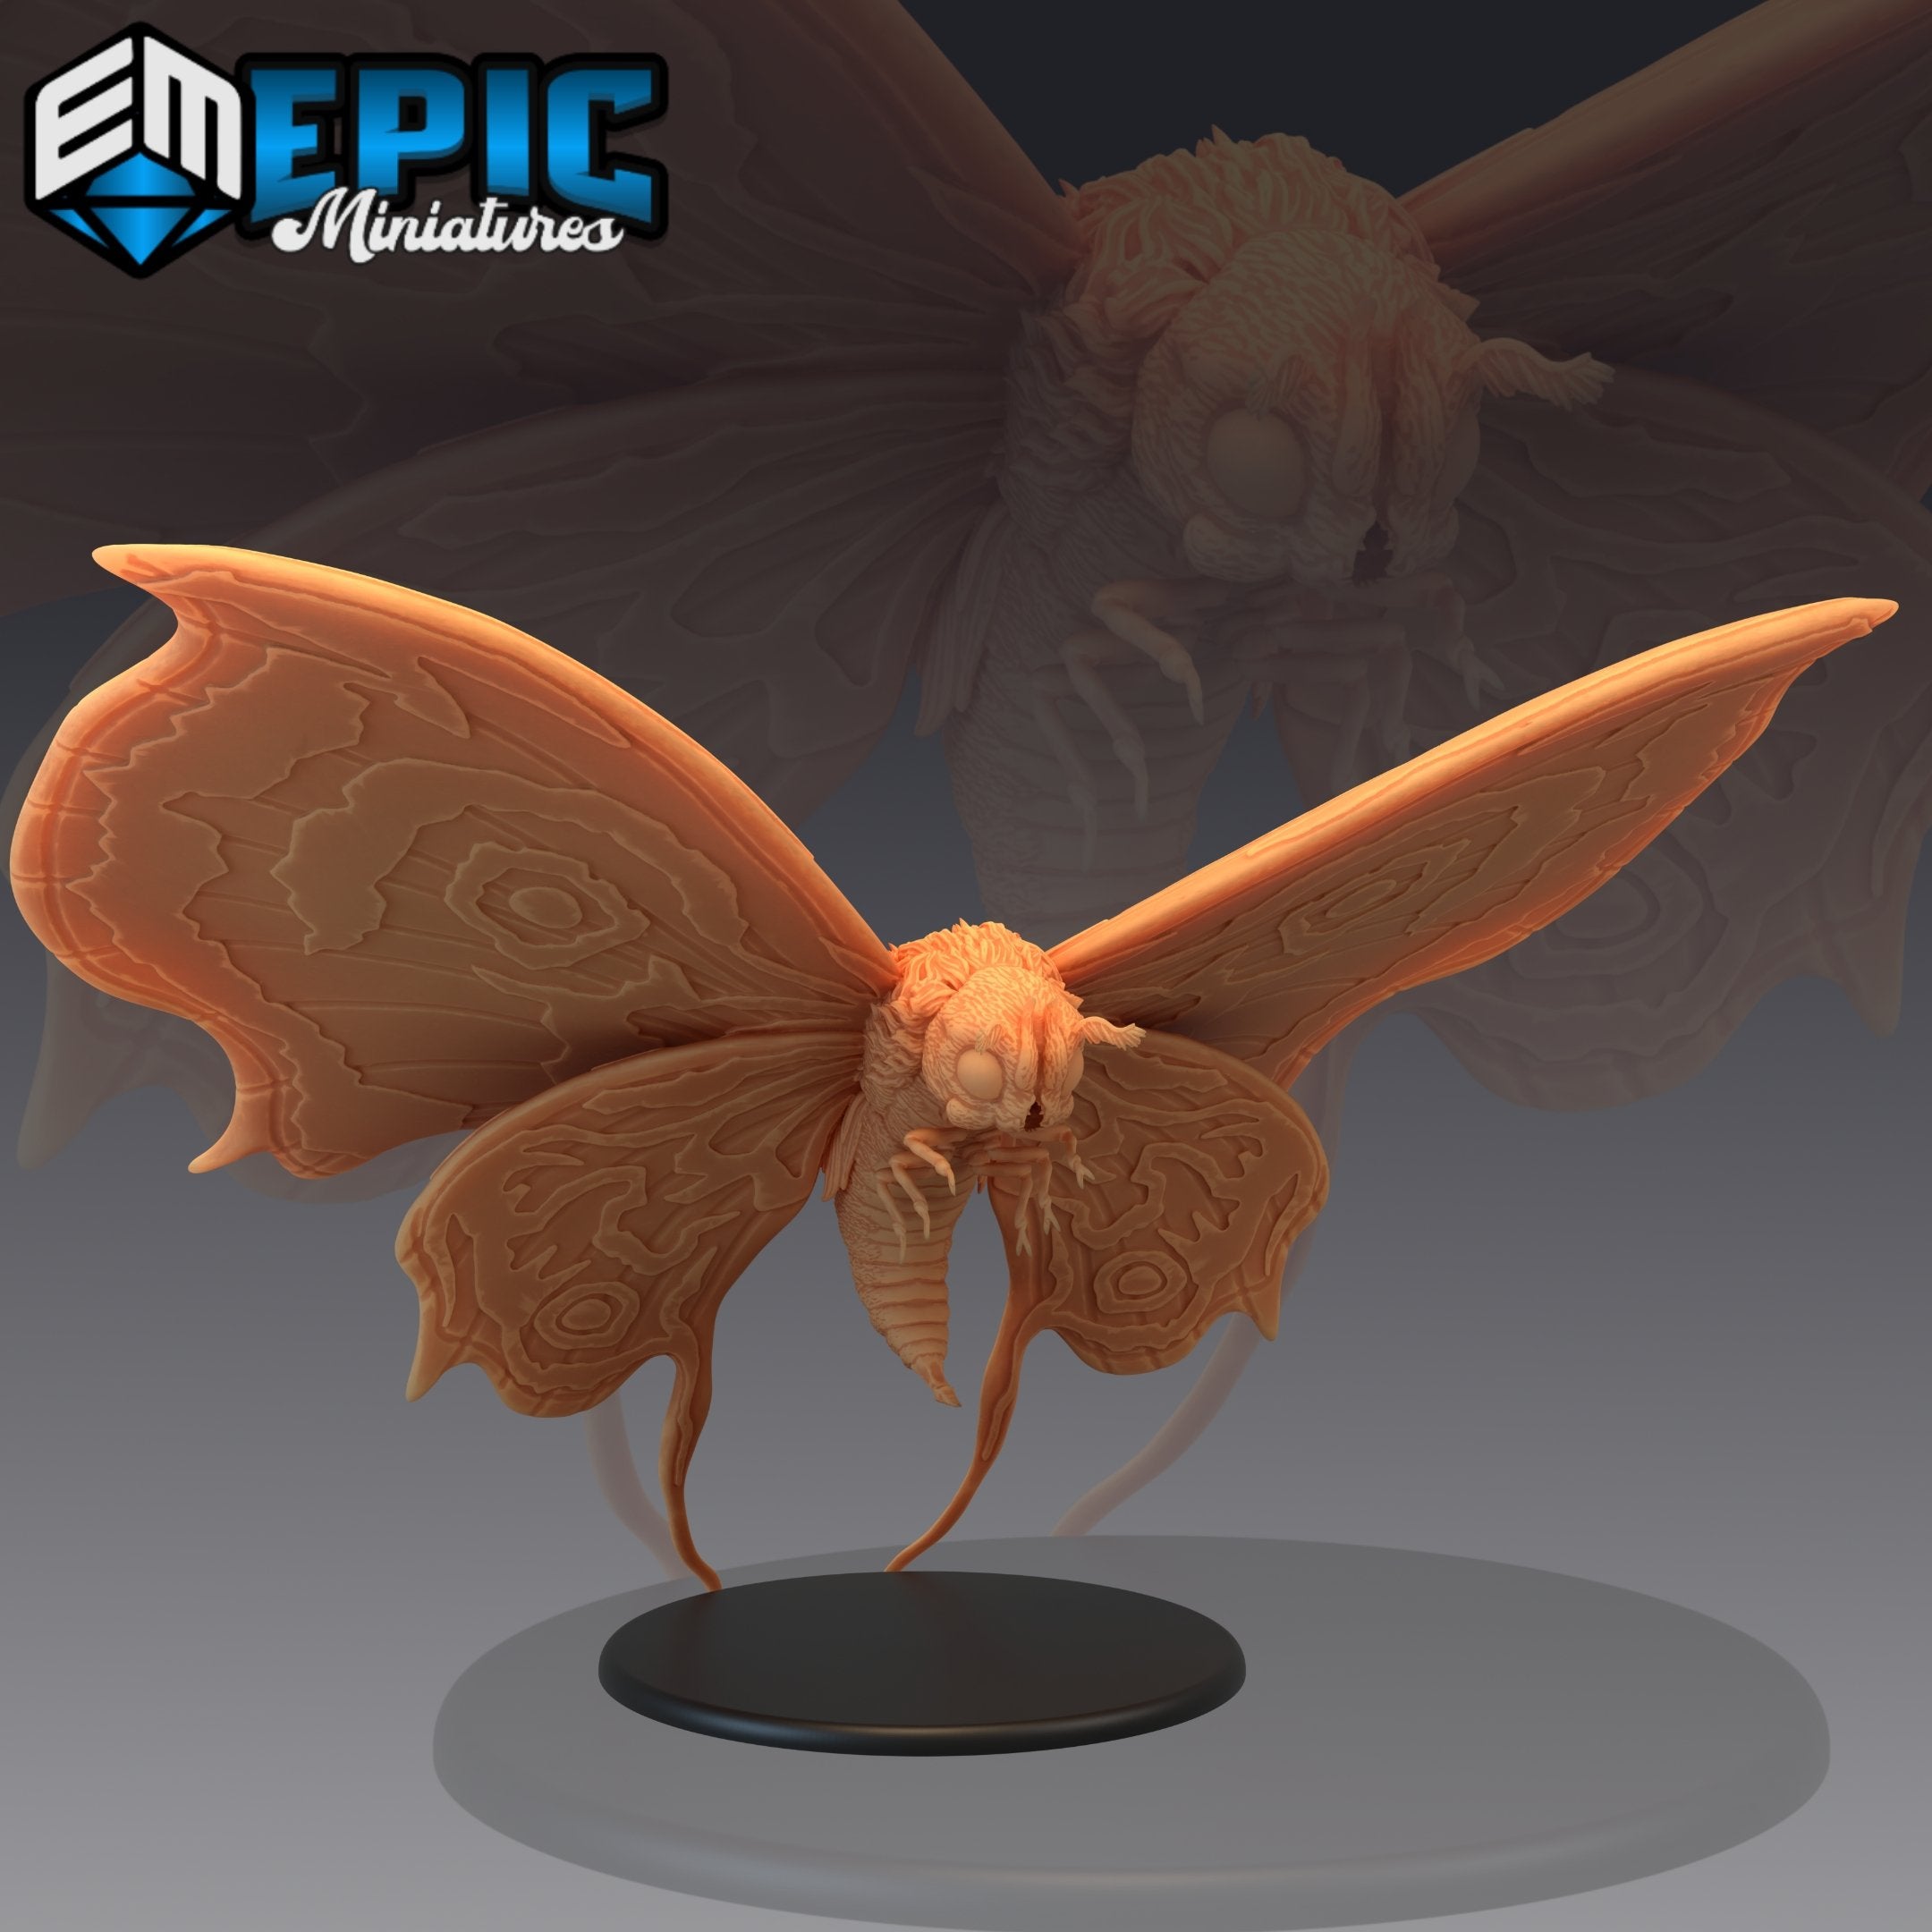 Giant Moth Titan - The Printable Dragon